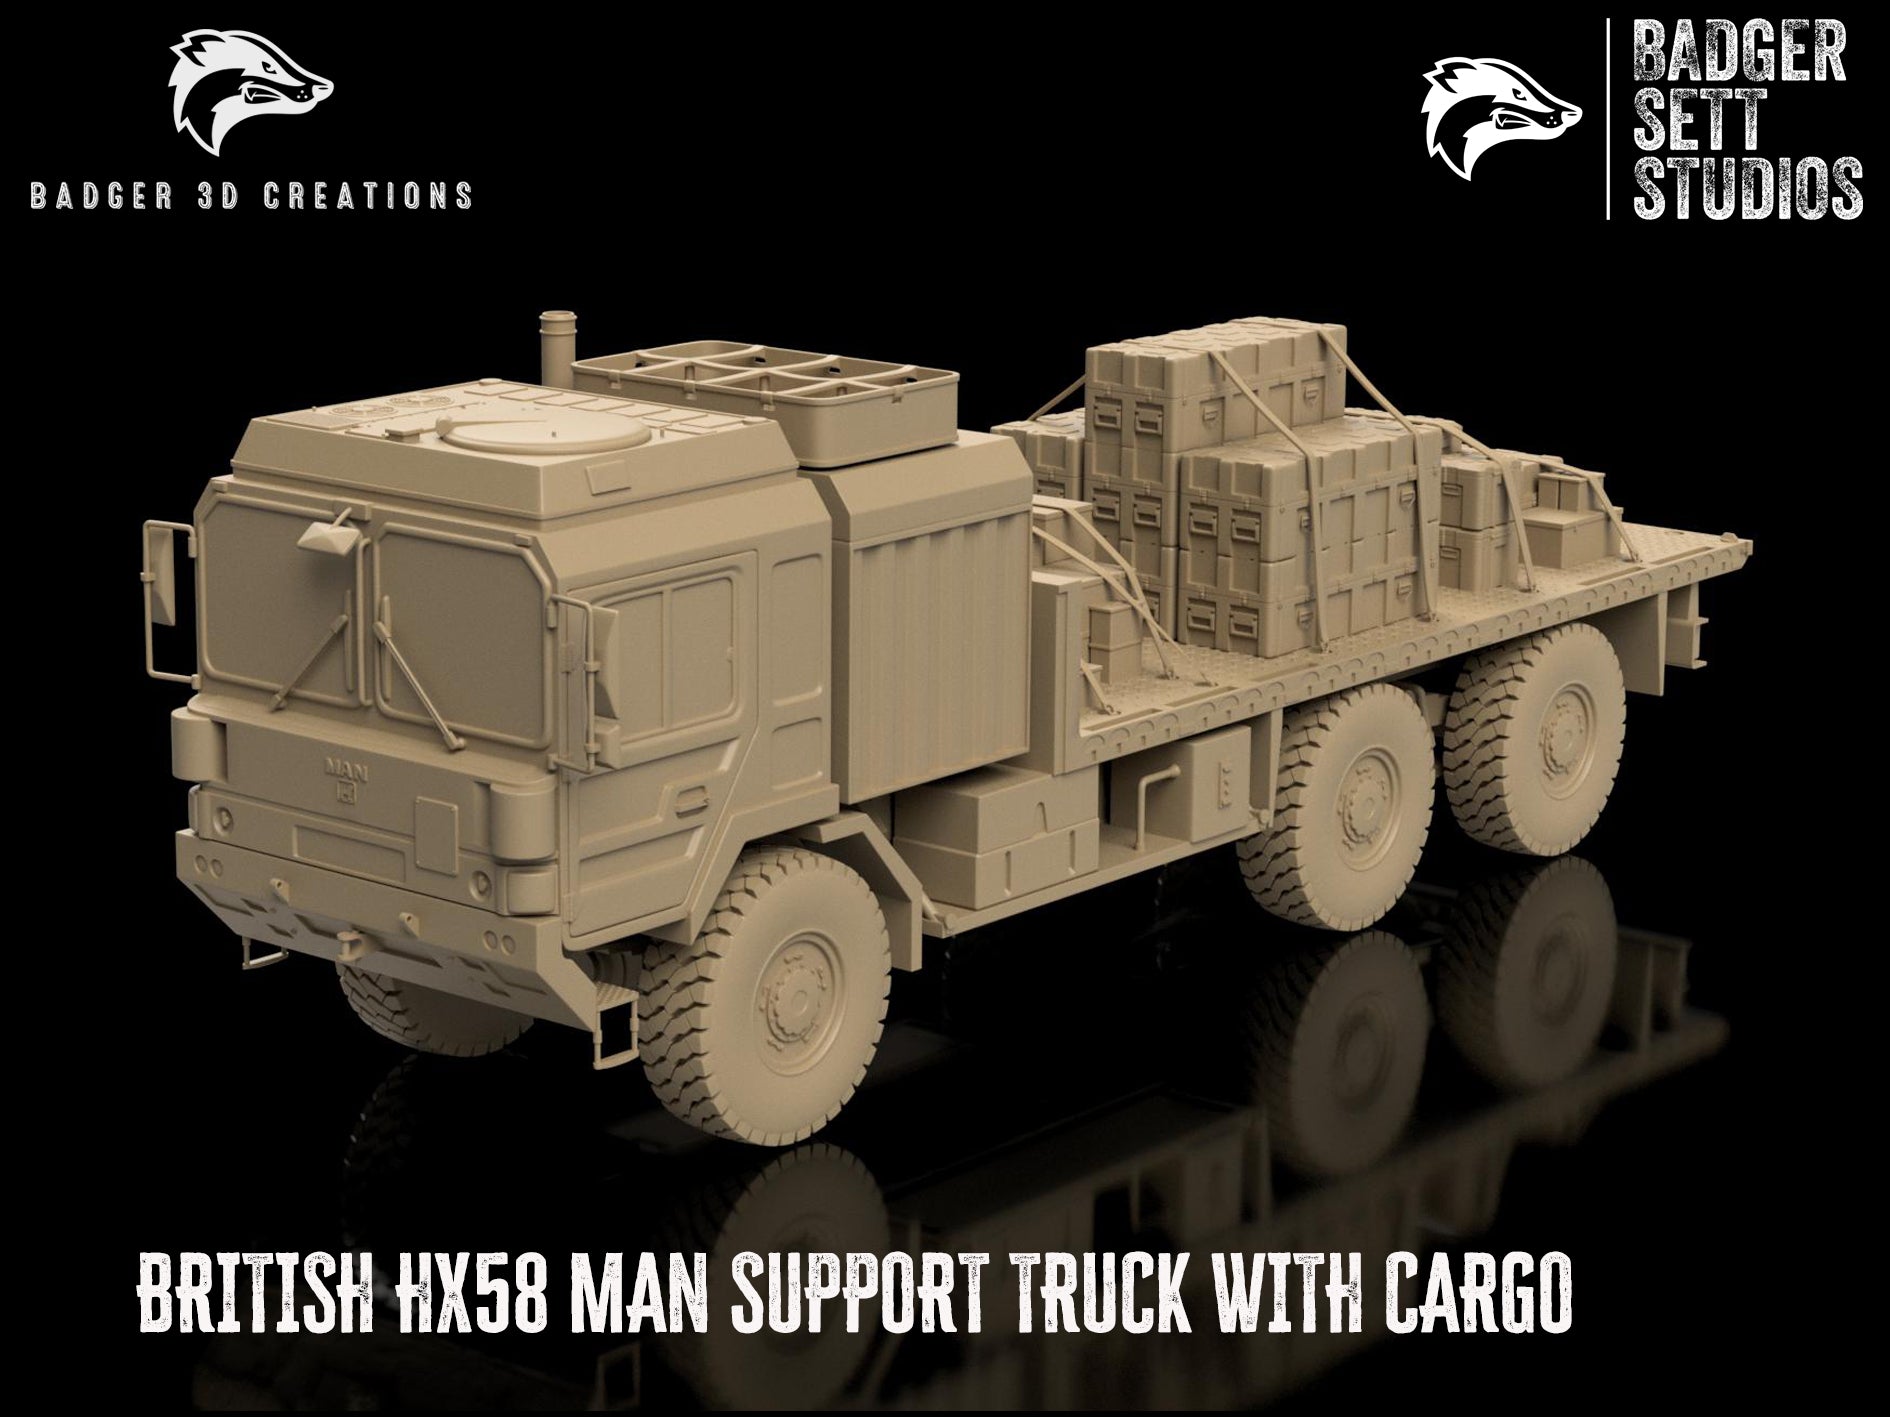 British HX58 MAN Support Truck - With Cargo